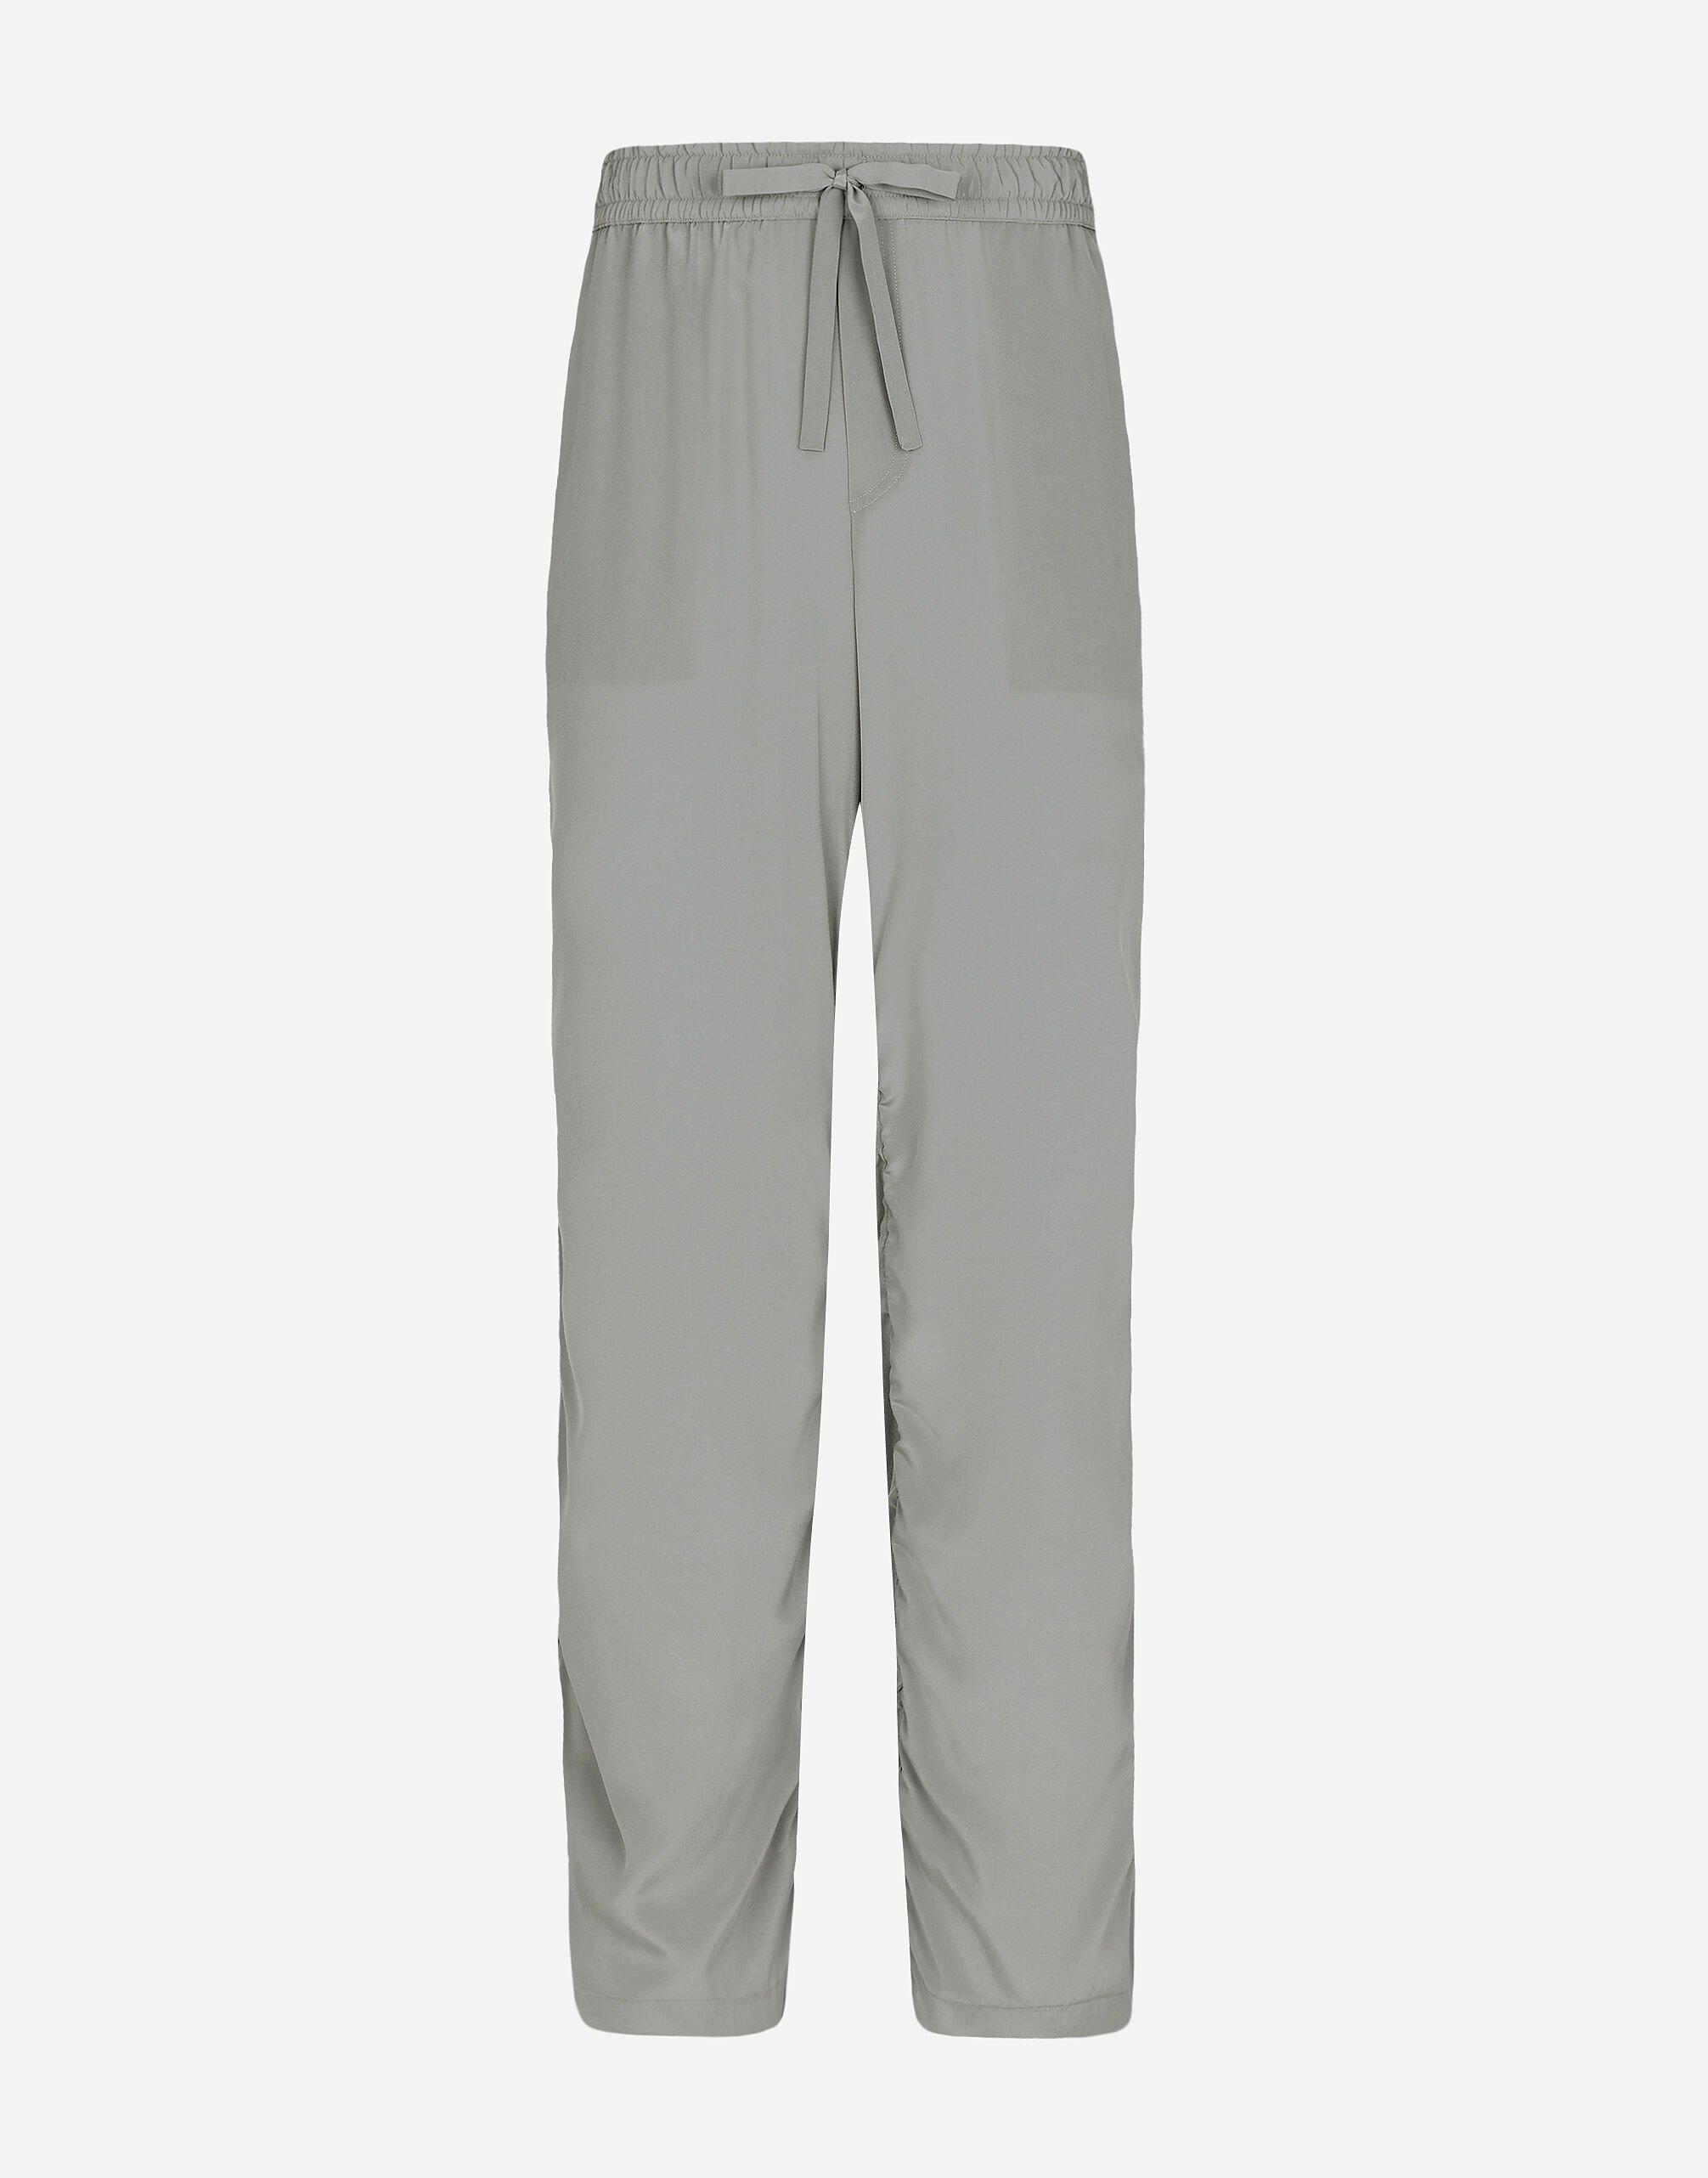 Dolce & Gabbana Silk jogging pants with gathered detailing Grey GP01PTFU4LB